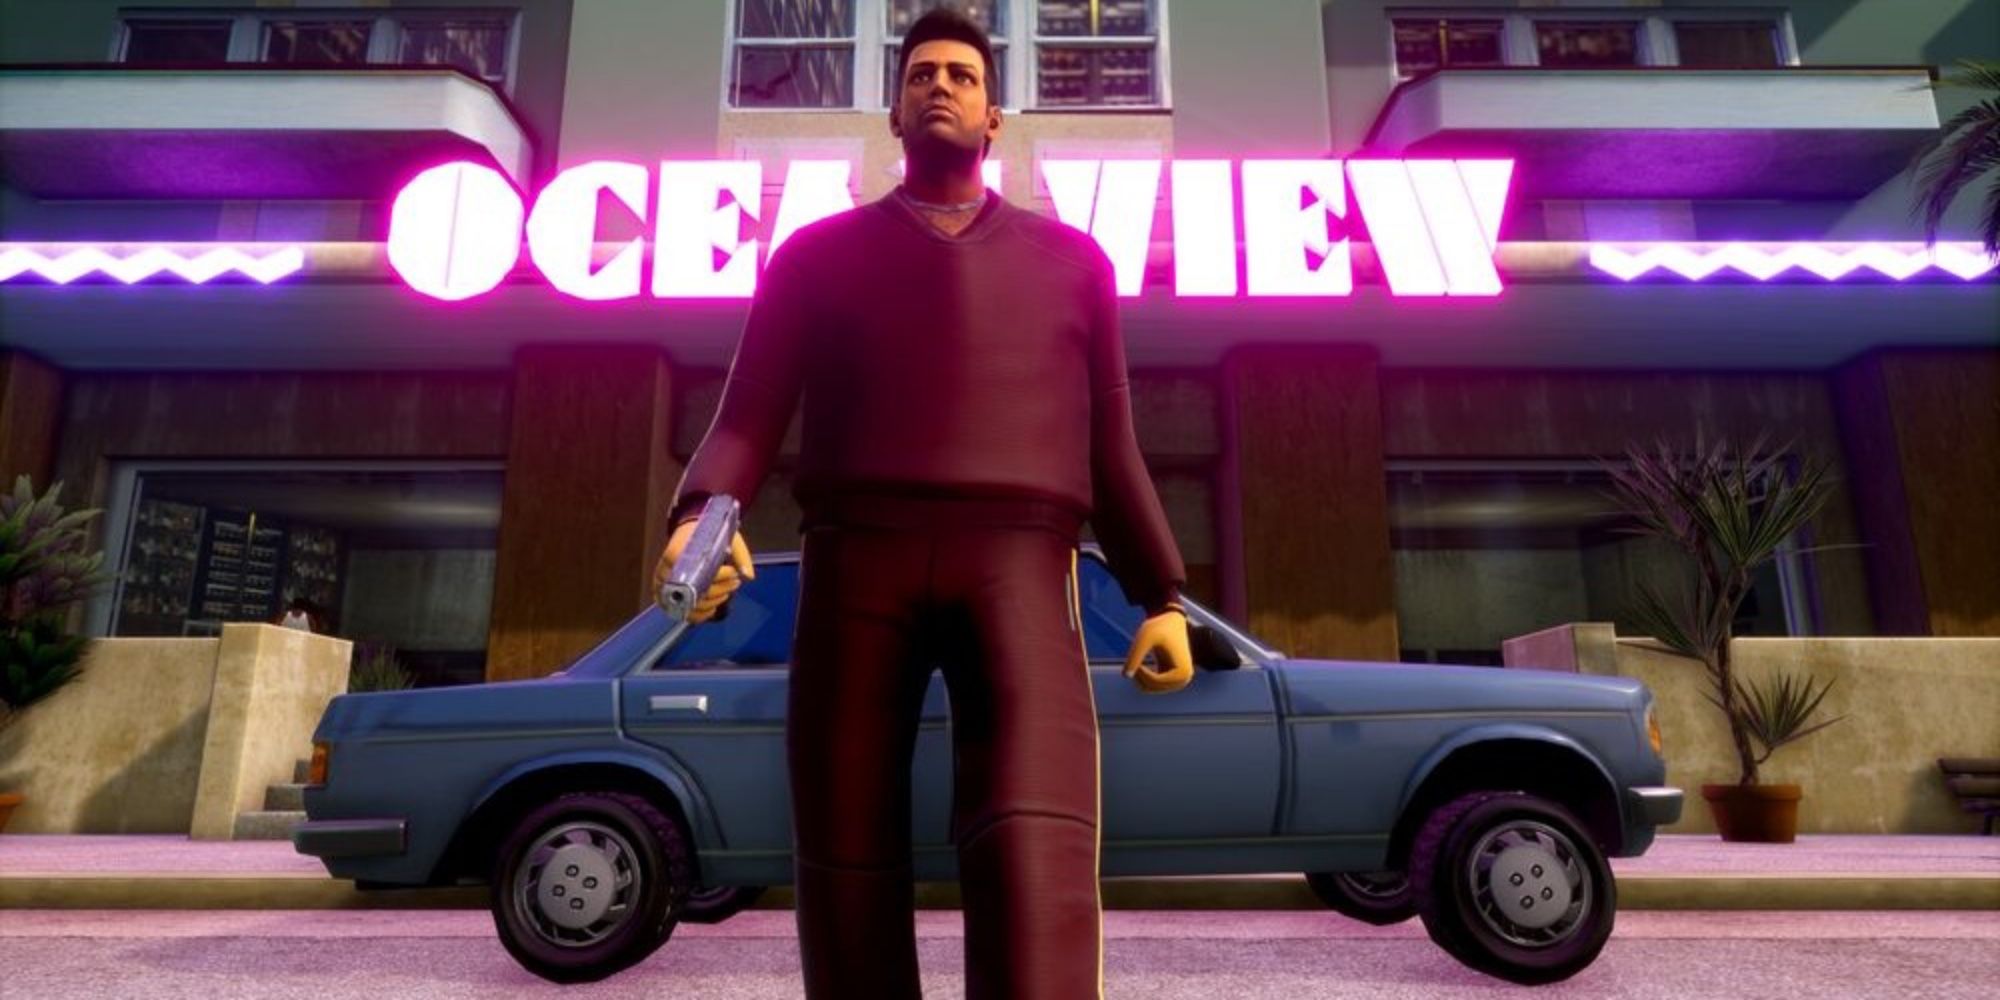 Melhores anos em jogos - 2002 - Grand Theft Auto - Vice City - Tommy Vercetti busca aventura em Vice City